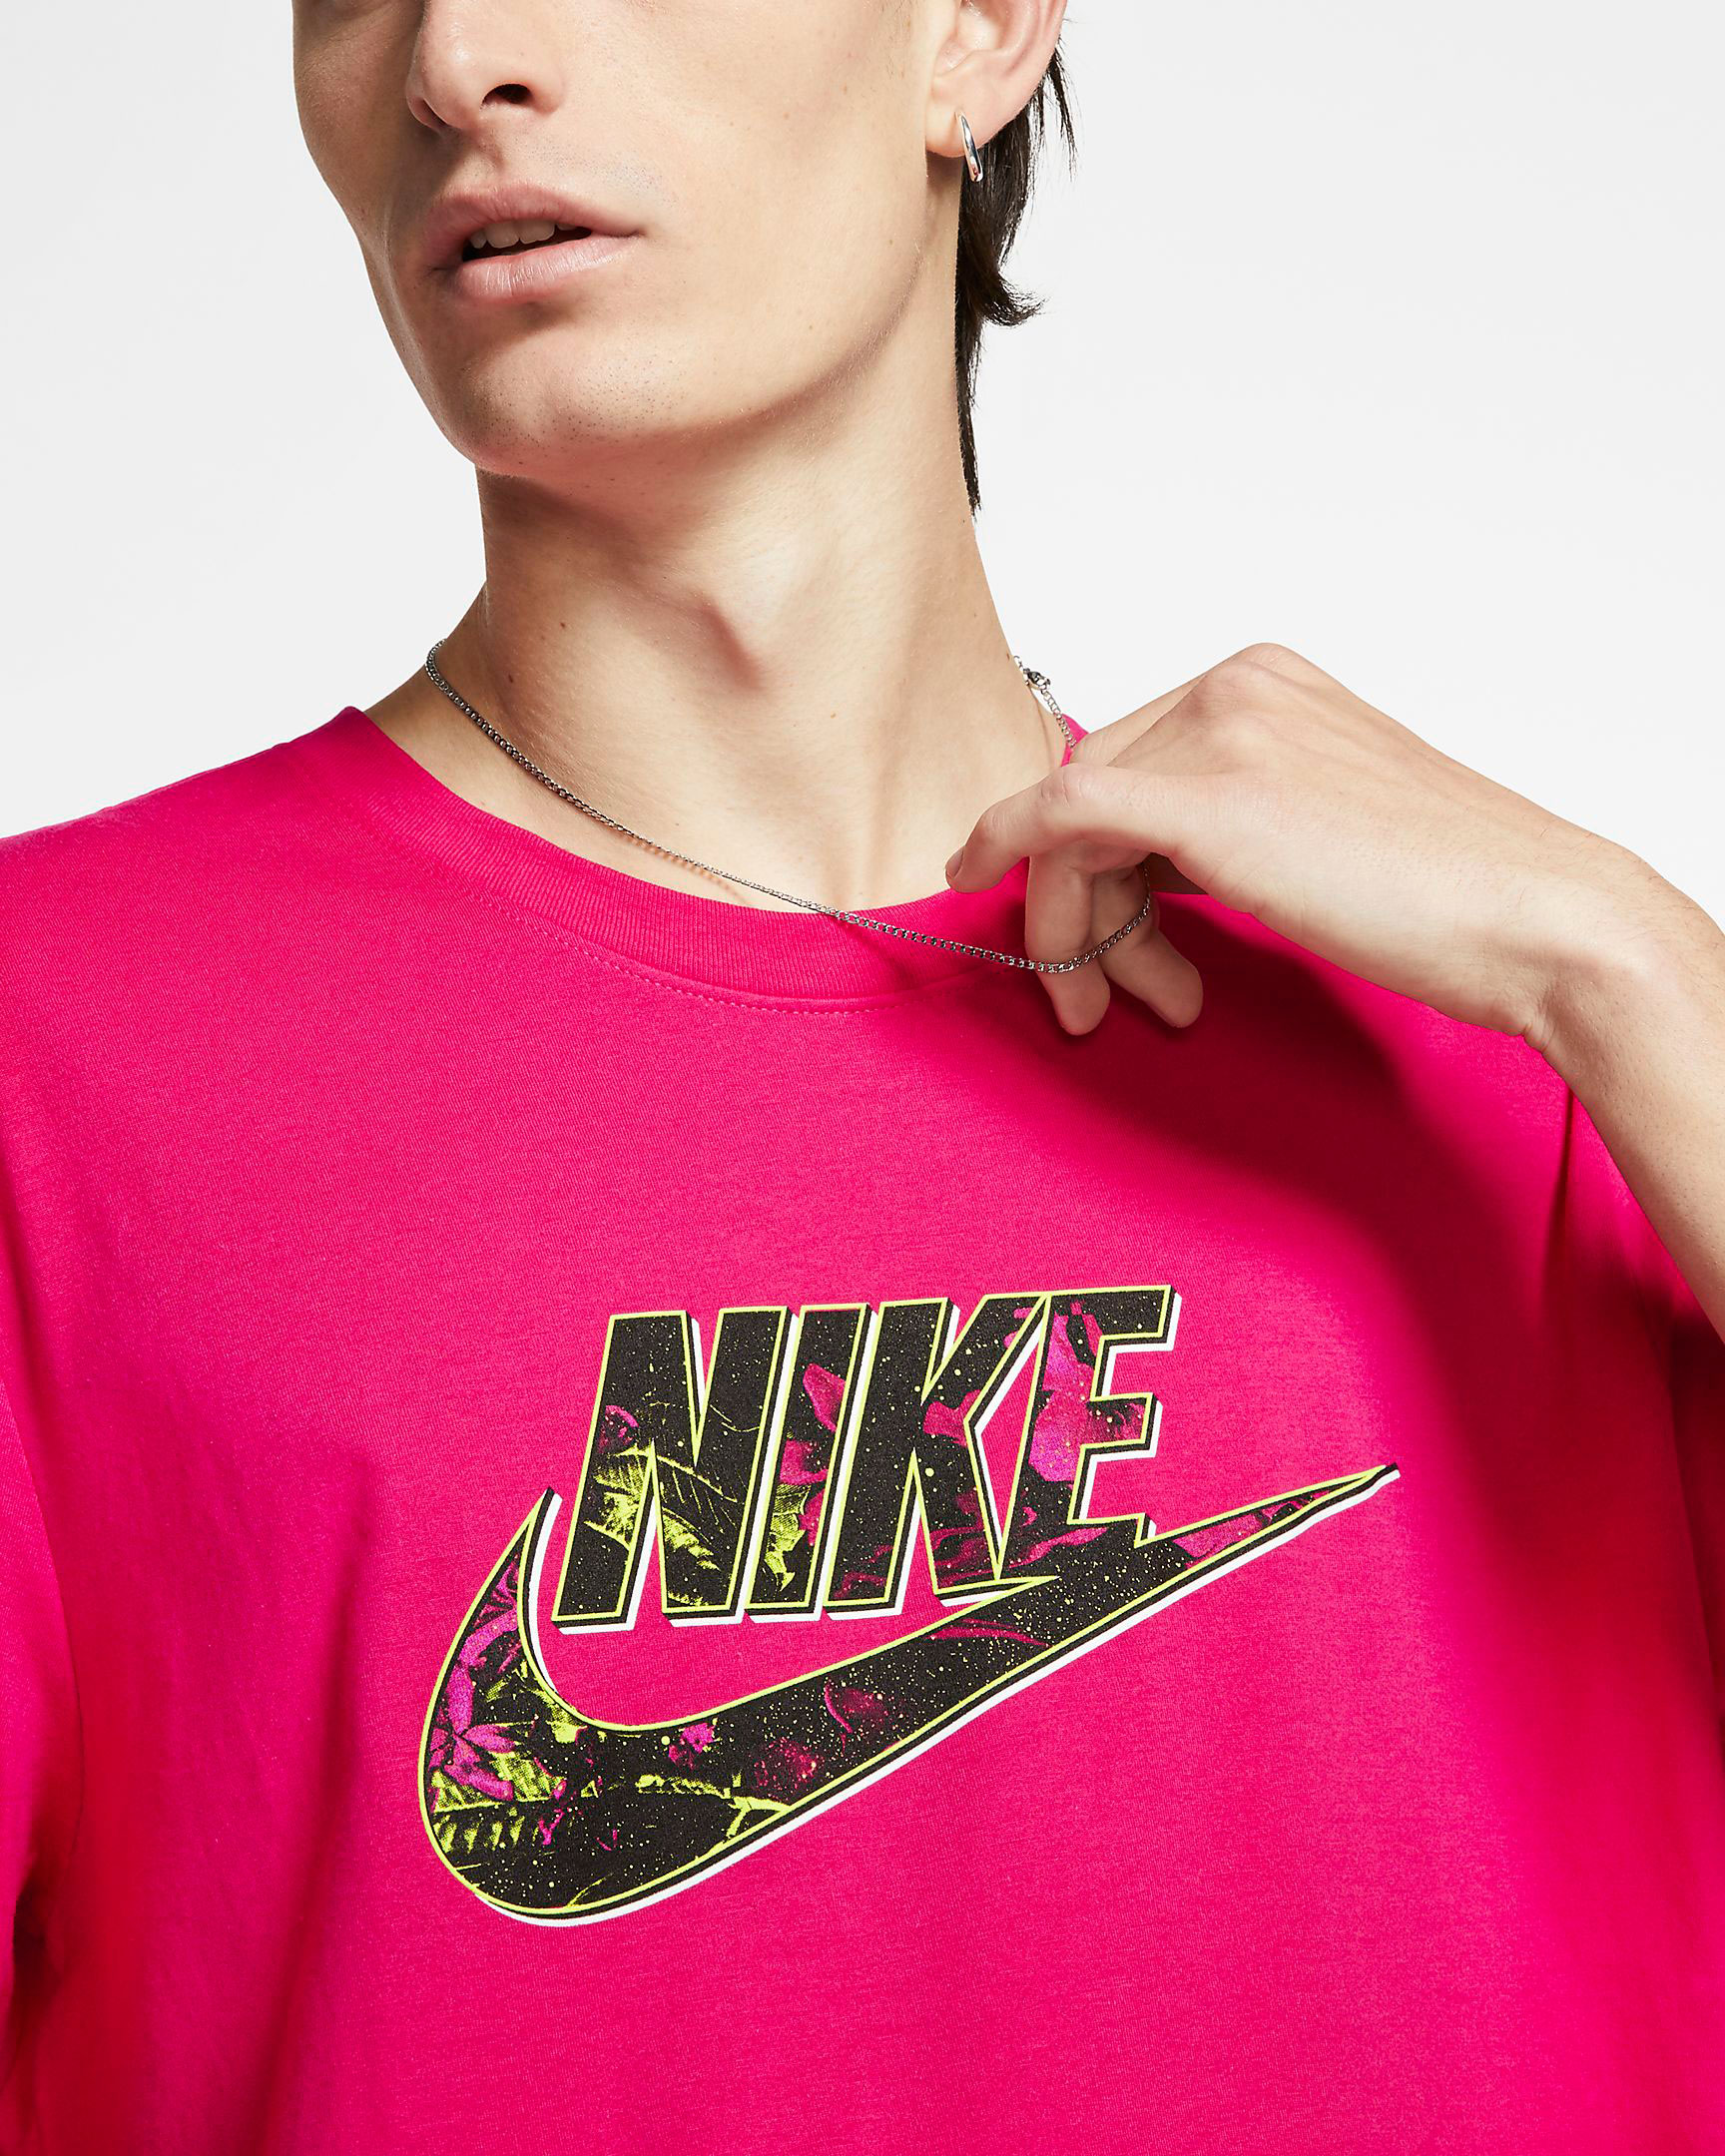 pink nike air max shirt